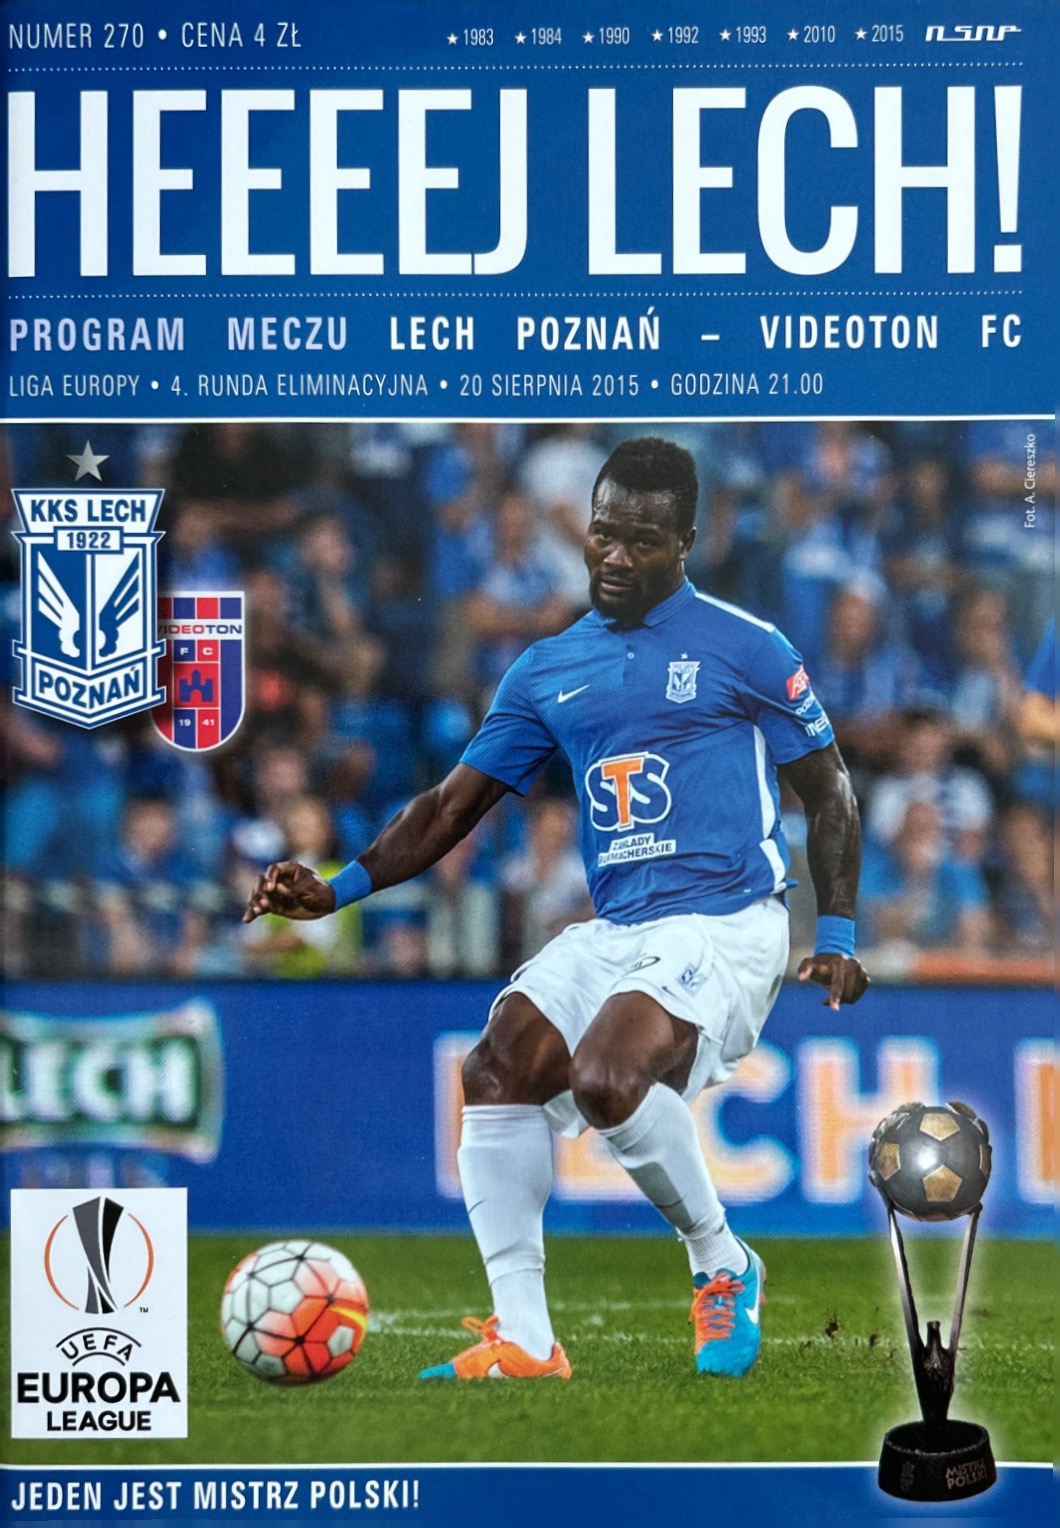 Program meczowy Lech Poznań - Standard Liège 3:1 (05.11.2020)